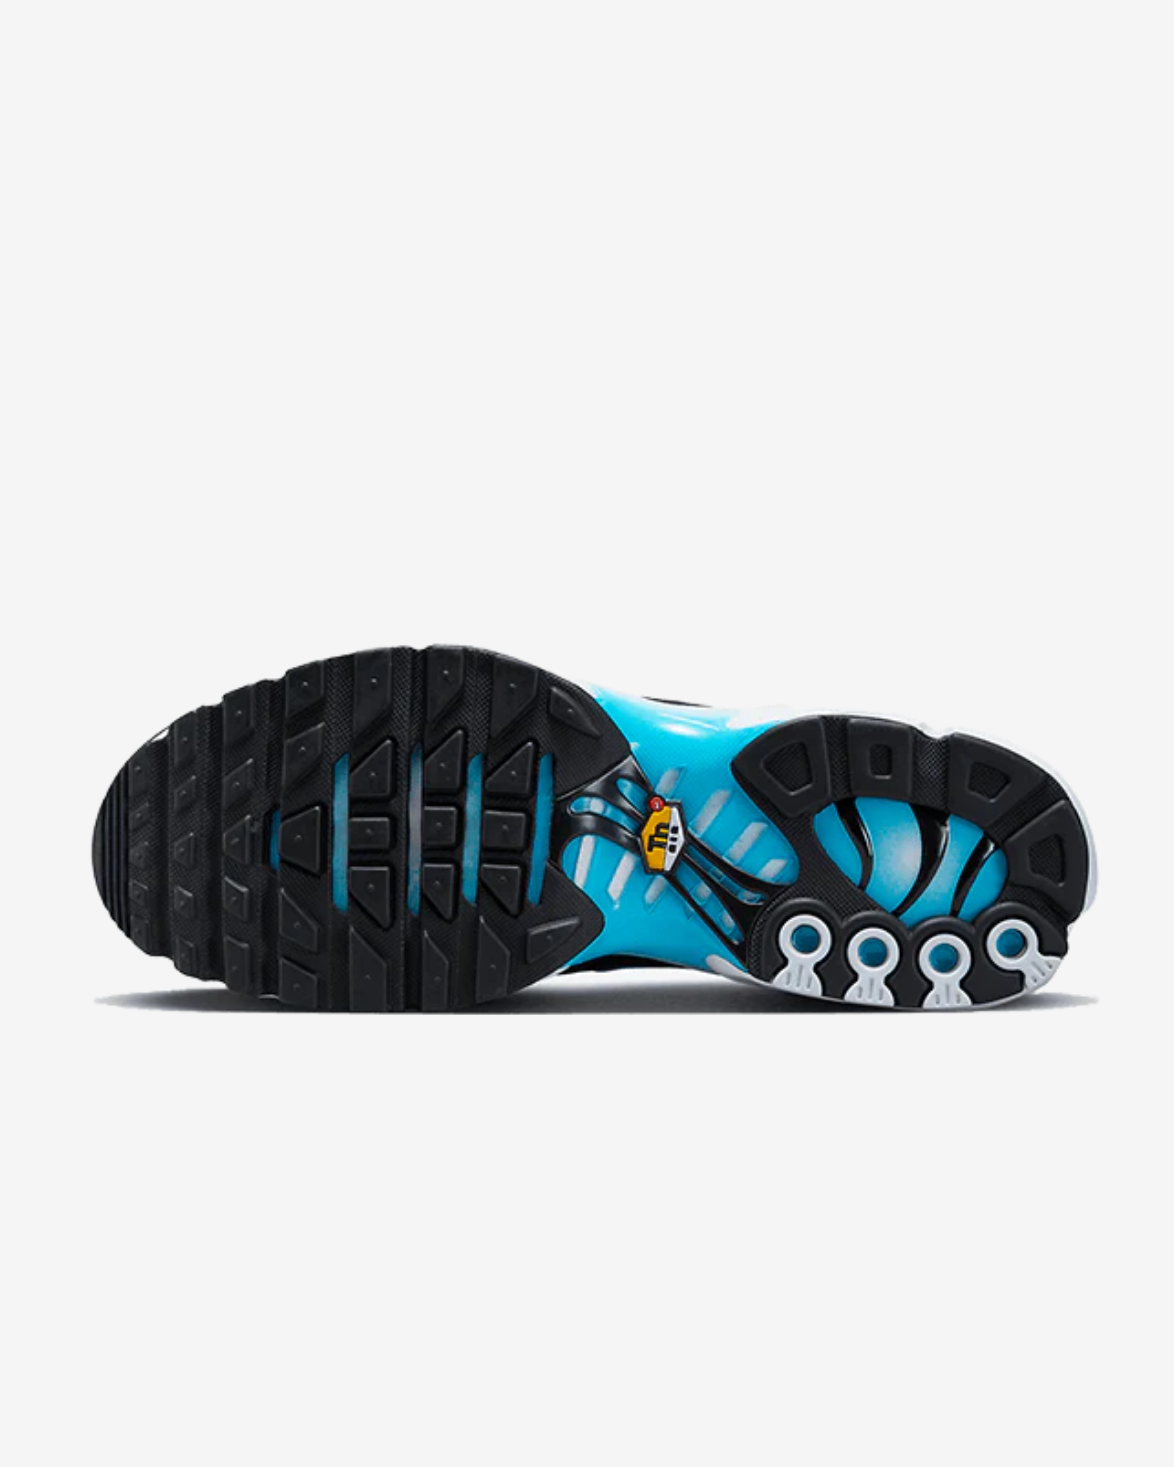 Sneakers Nike Air Max Plus Baltic Blue - SNEAKERS PRIME